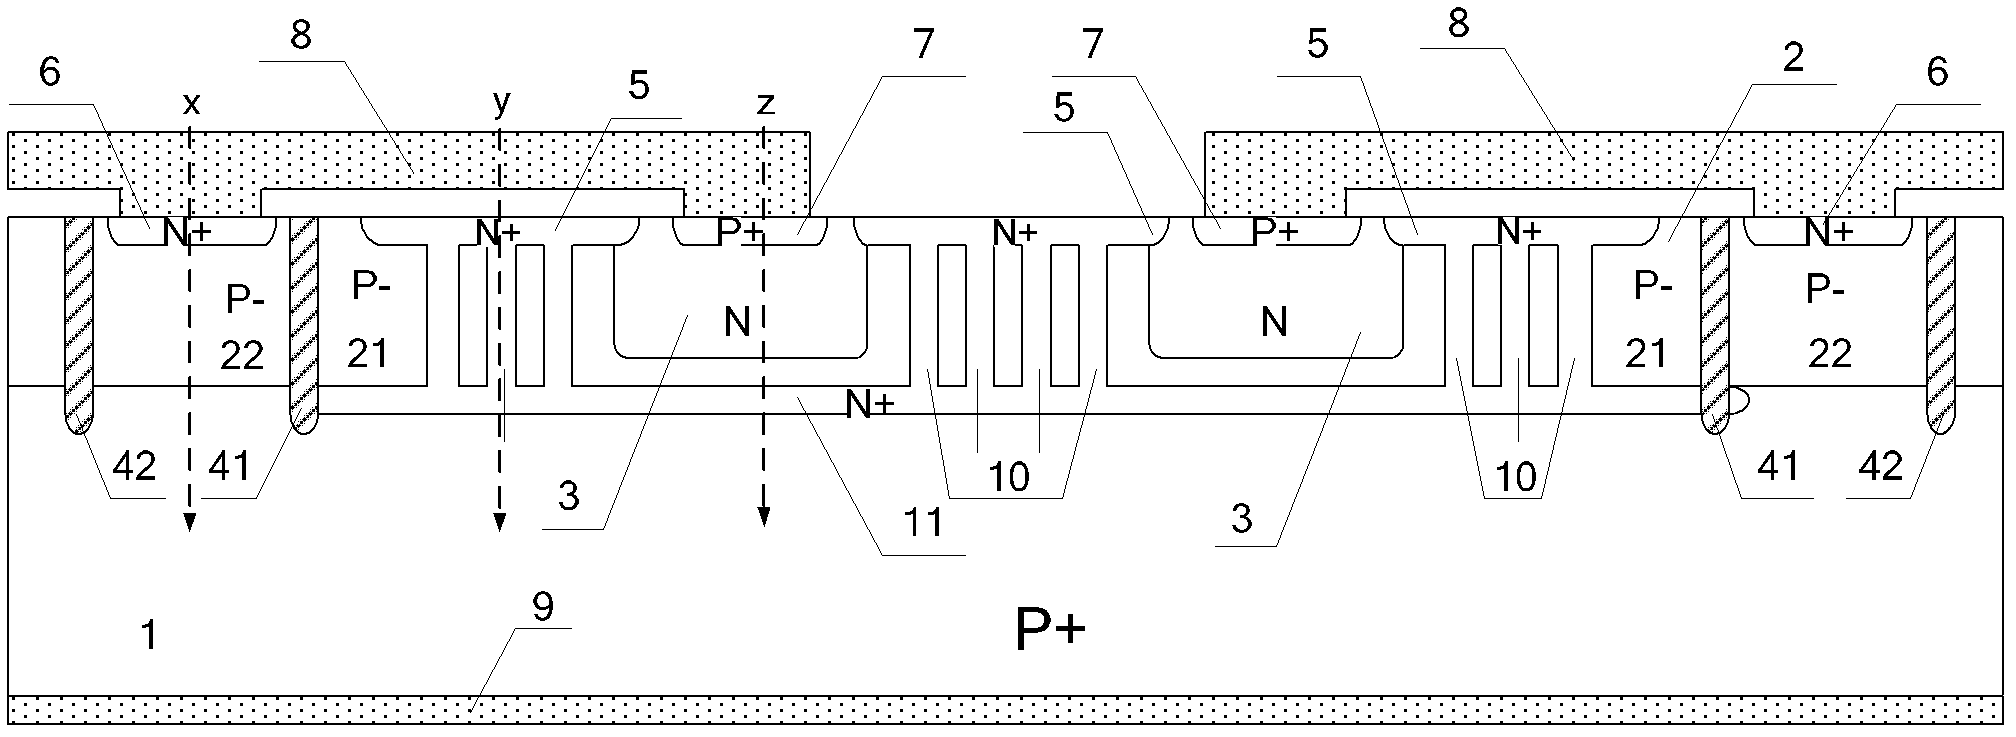 Multi-porous channel current equalizing-based transient voltage suppressor